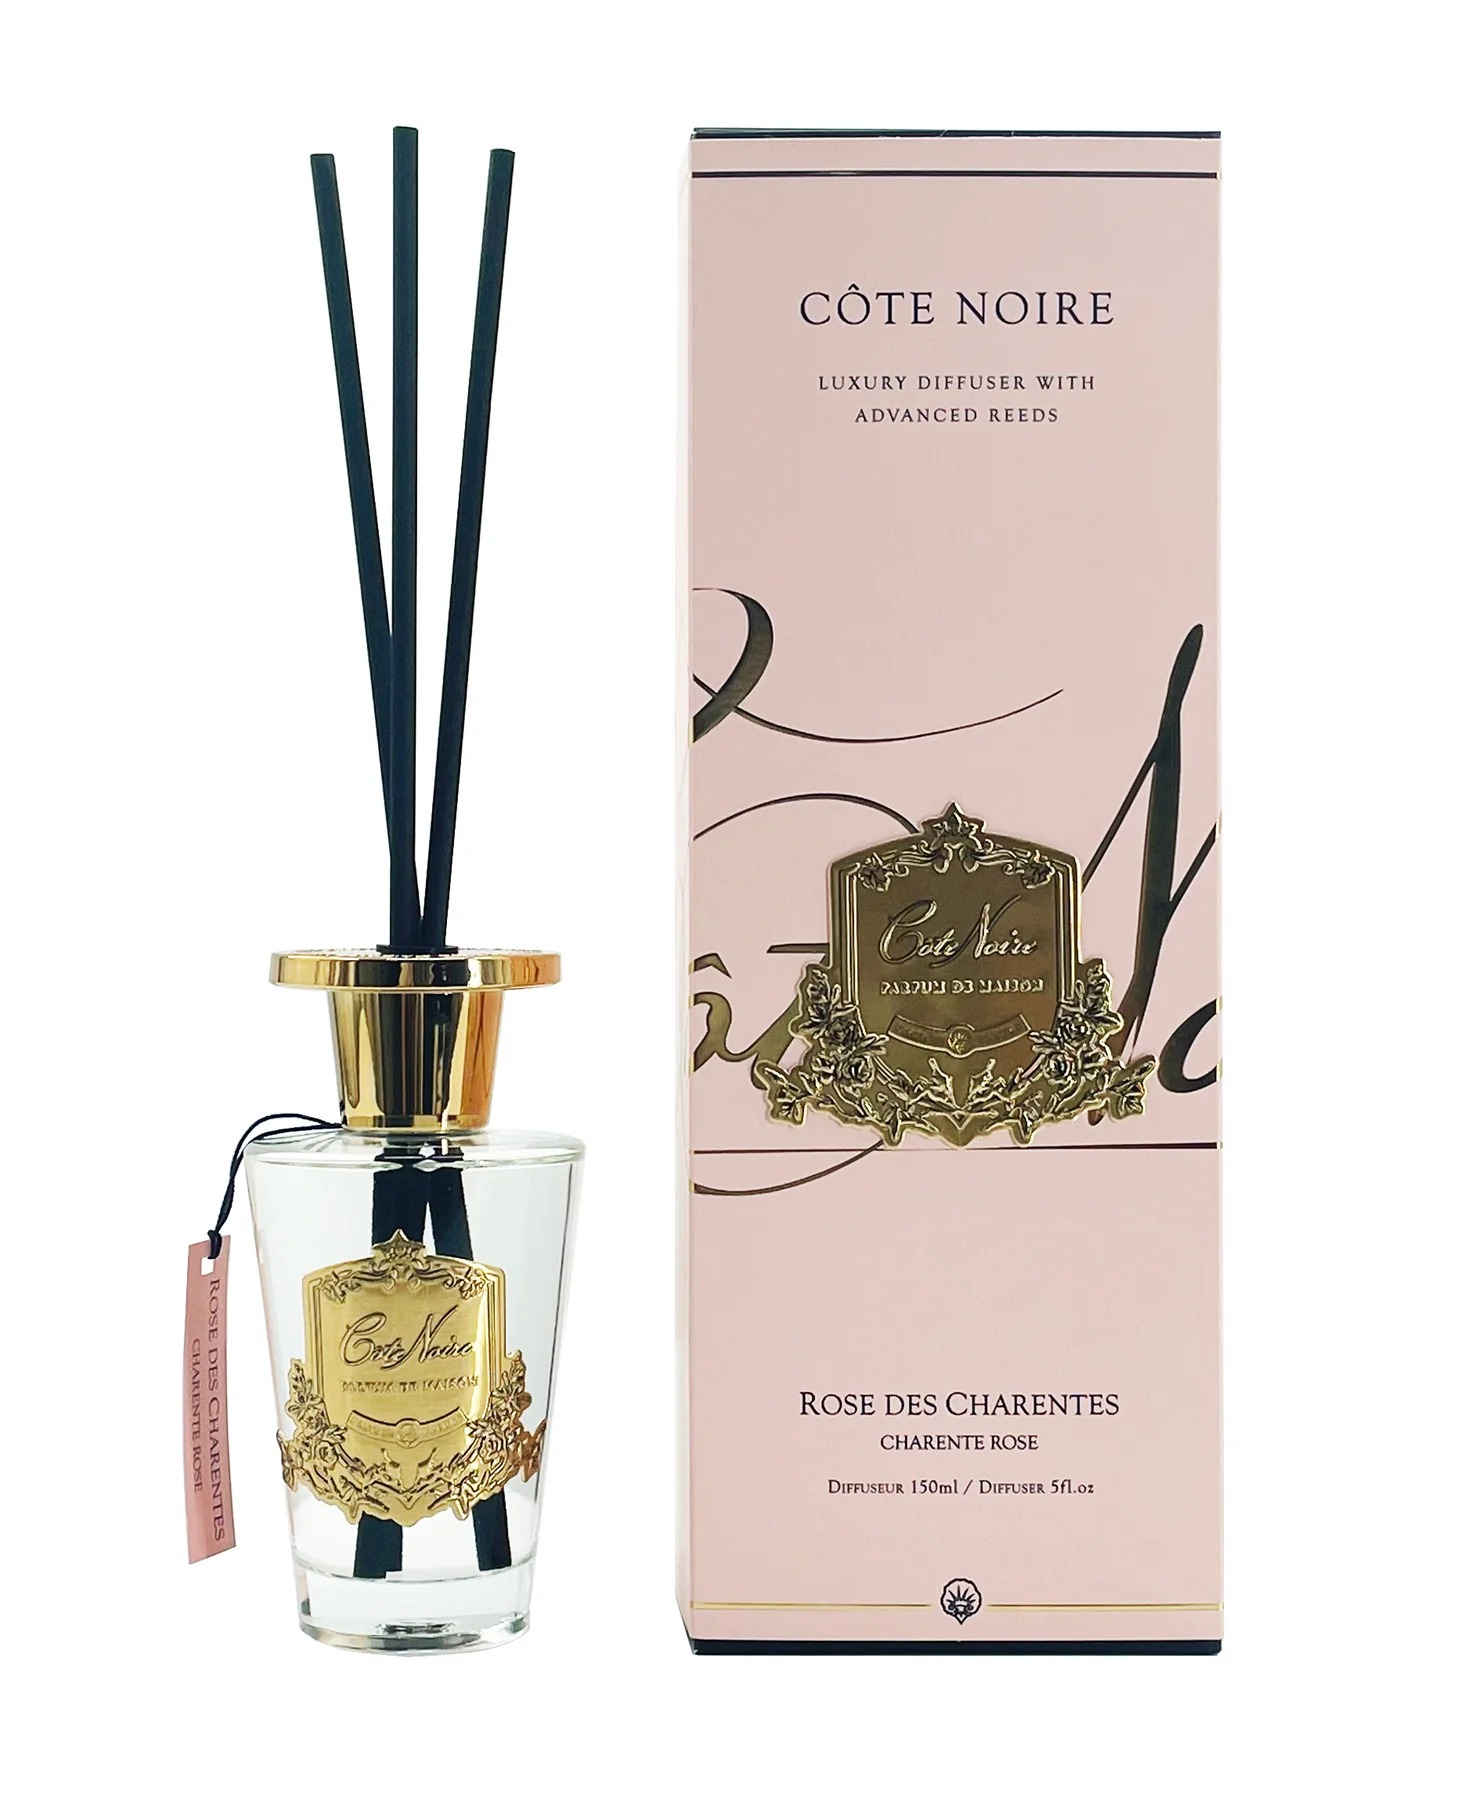 Cote Noire Charente Rose 150ml Diffuser Set - Gold